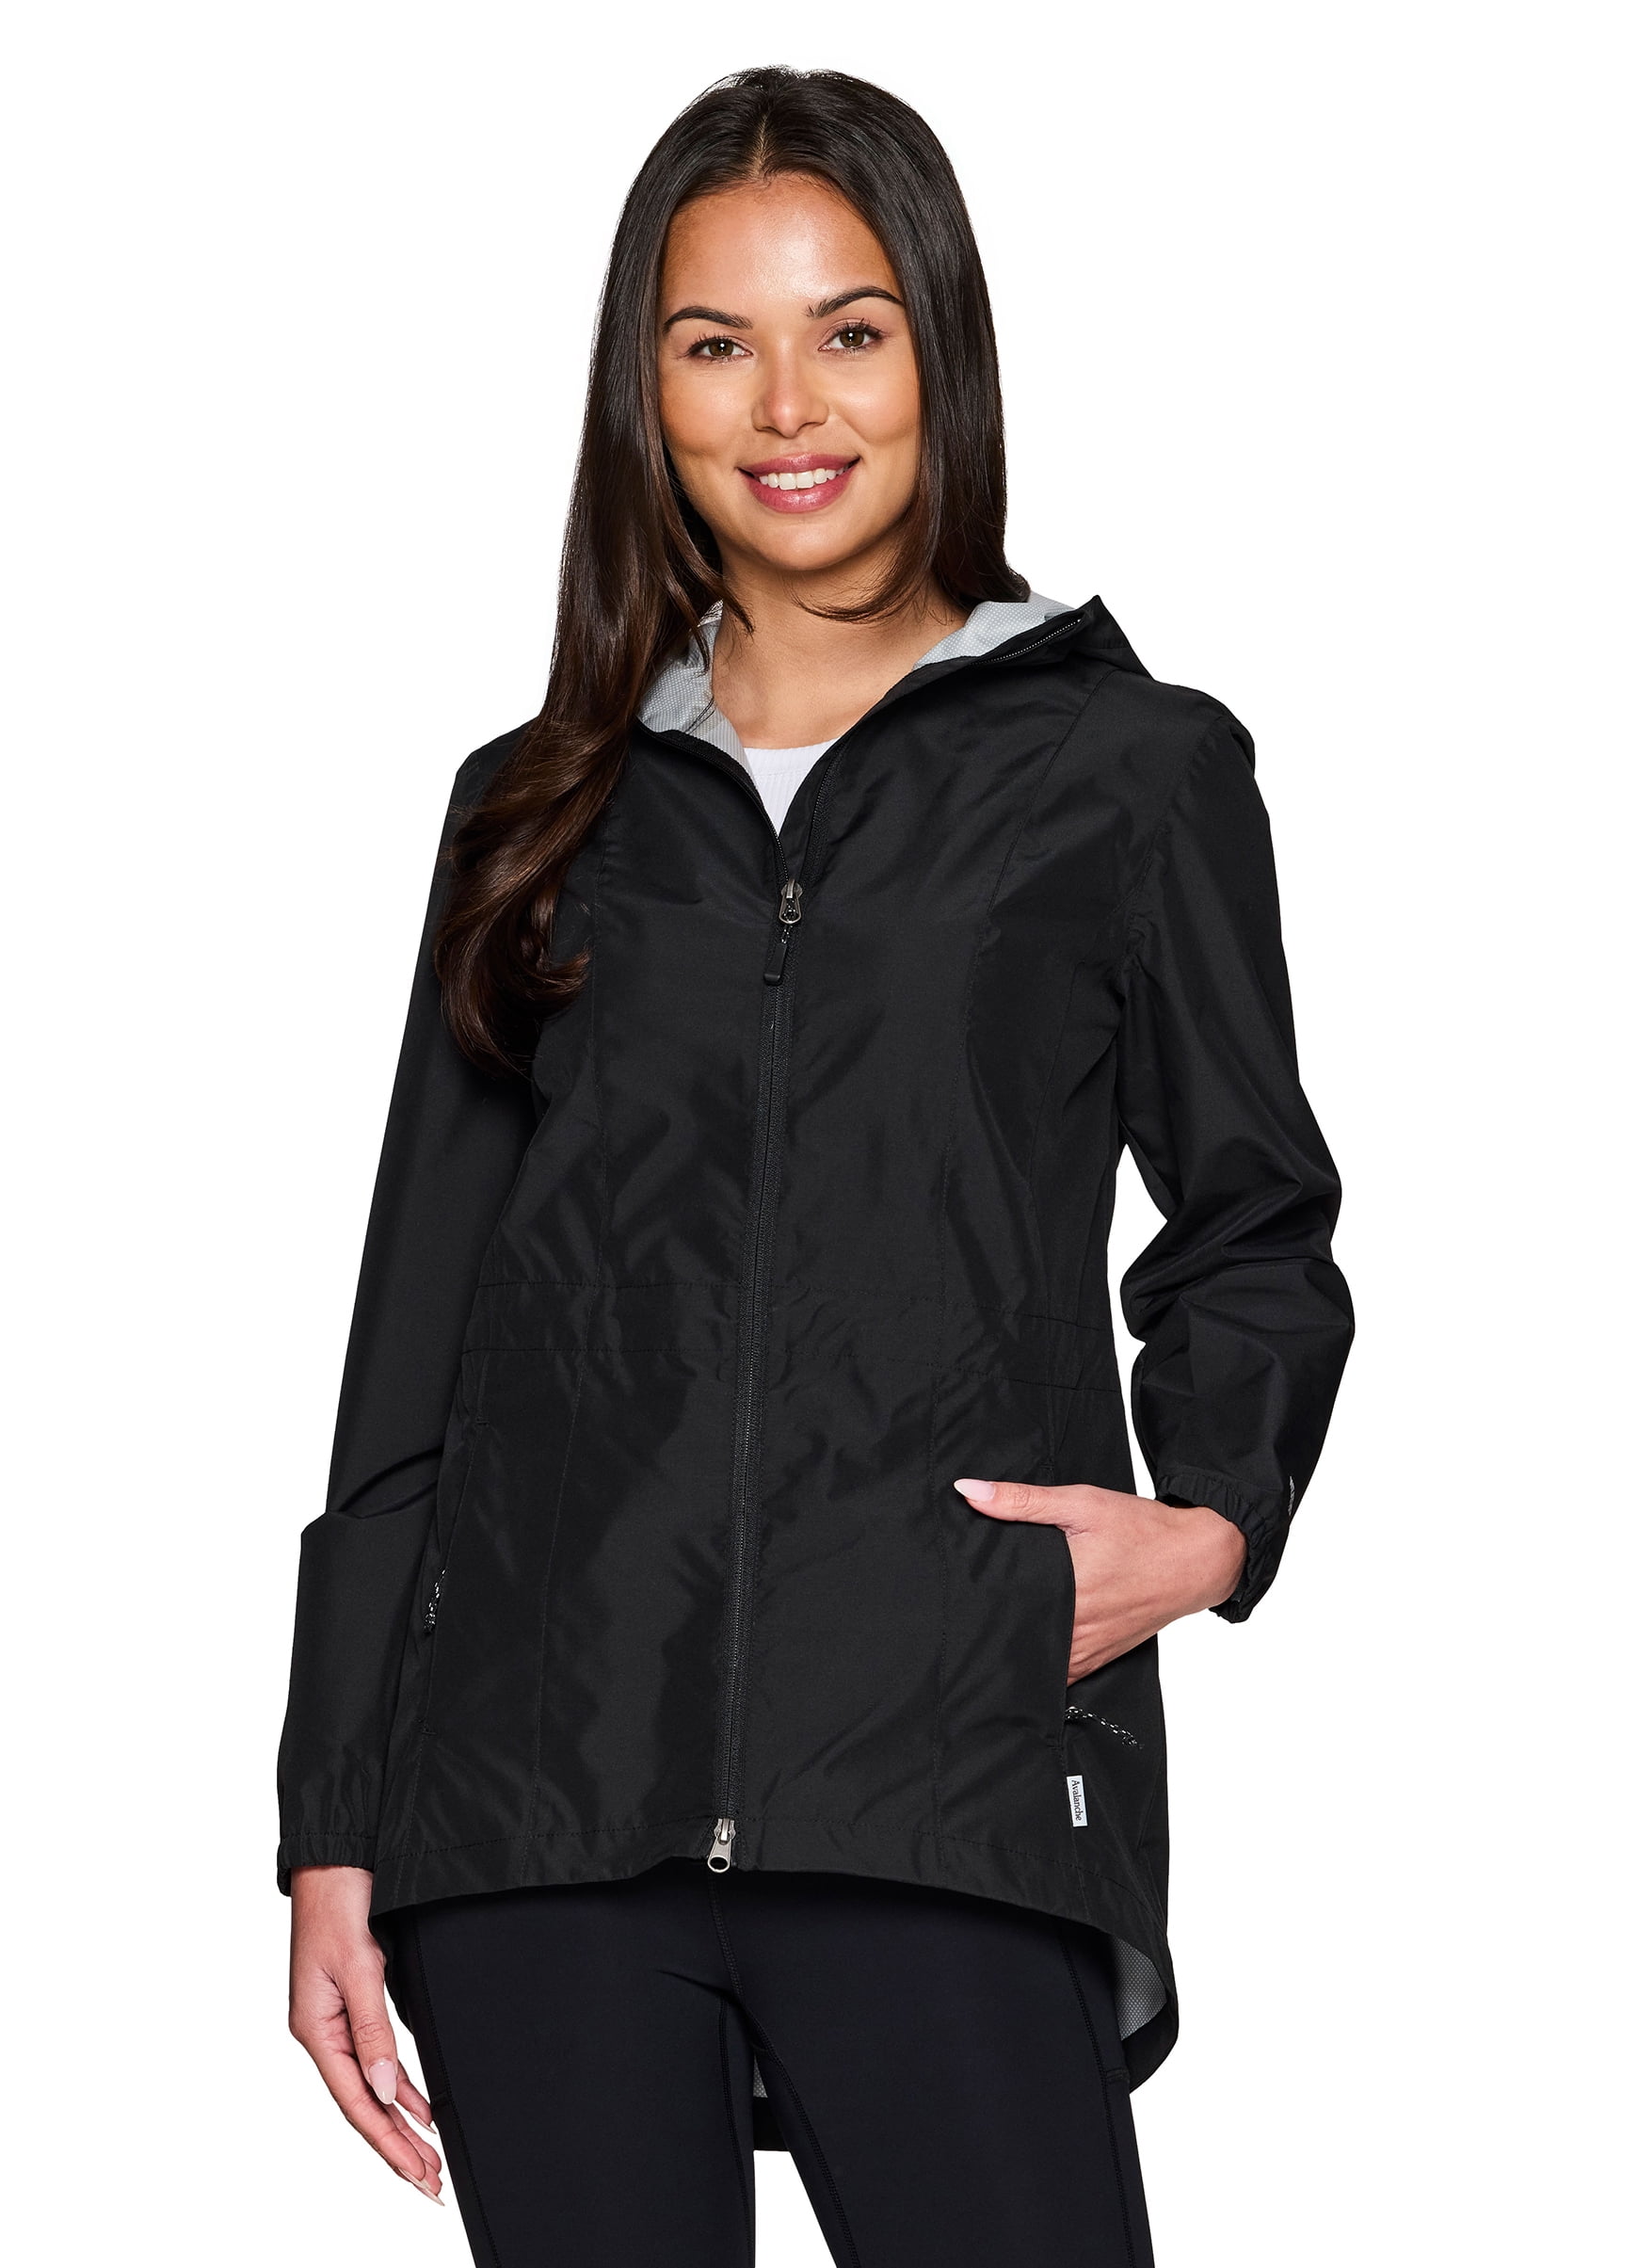 Avalanche Women's Lightweight Ripstop Rain Jacket With Zipper Pockets ...